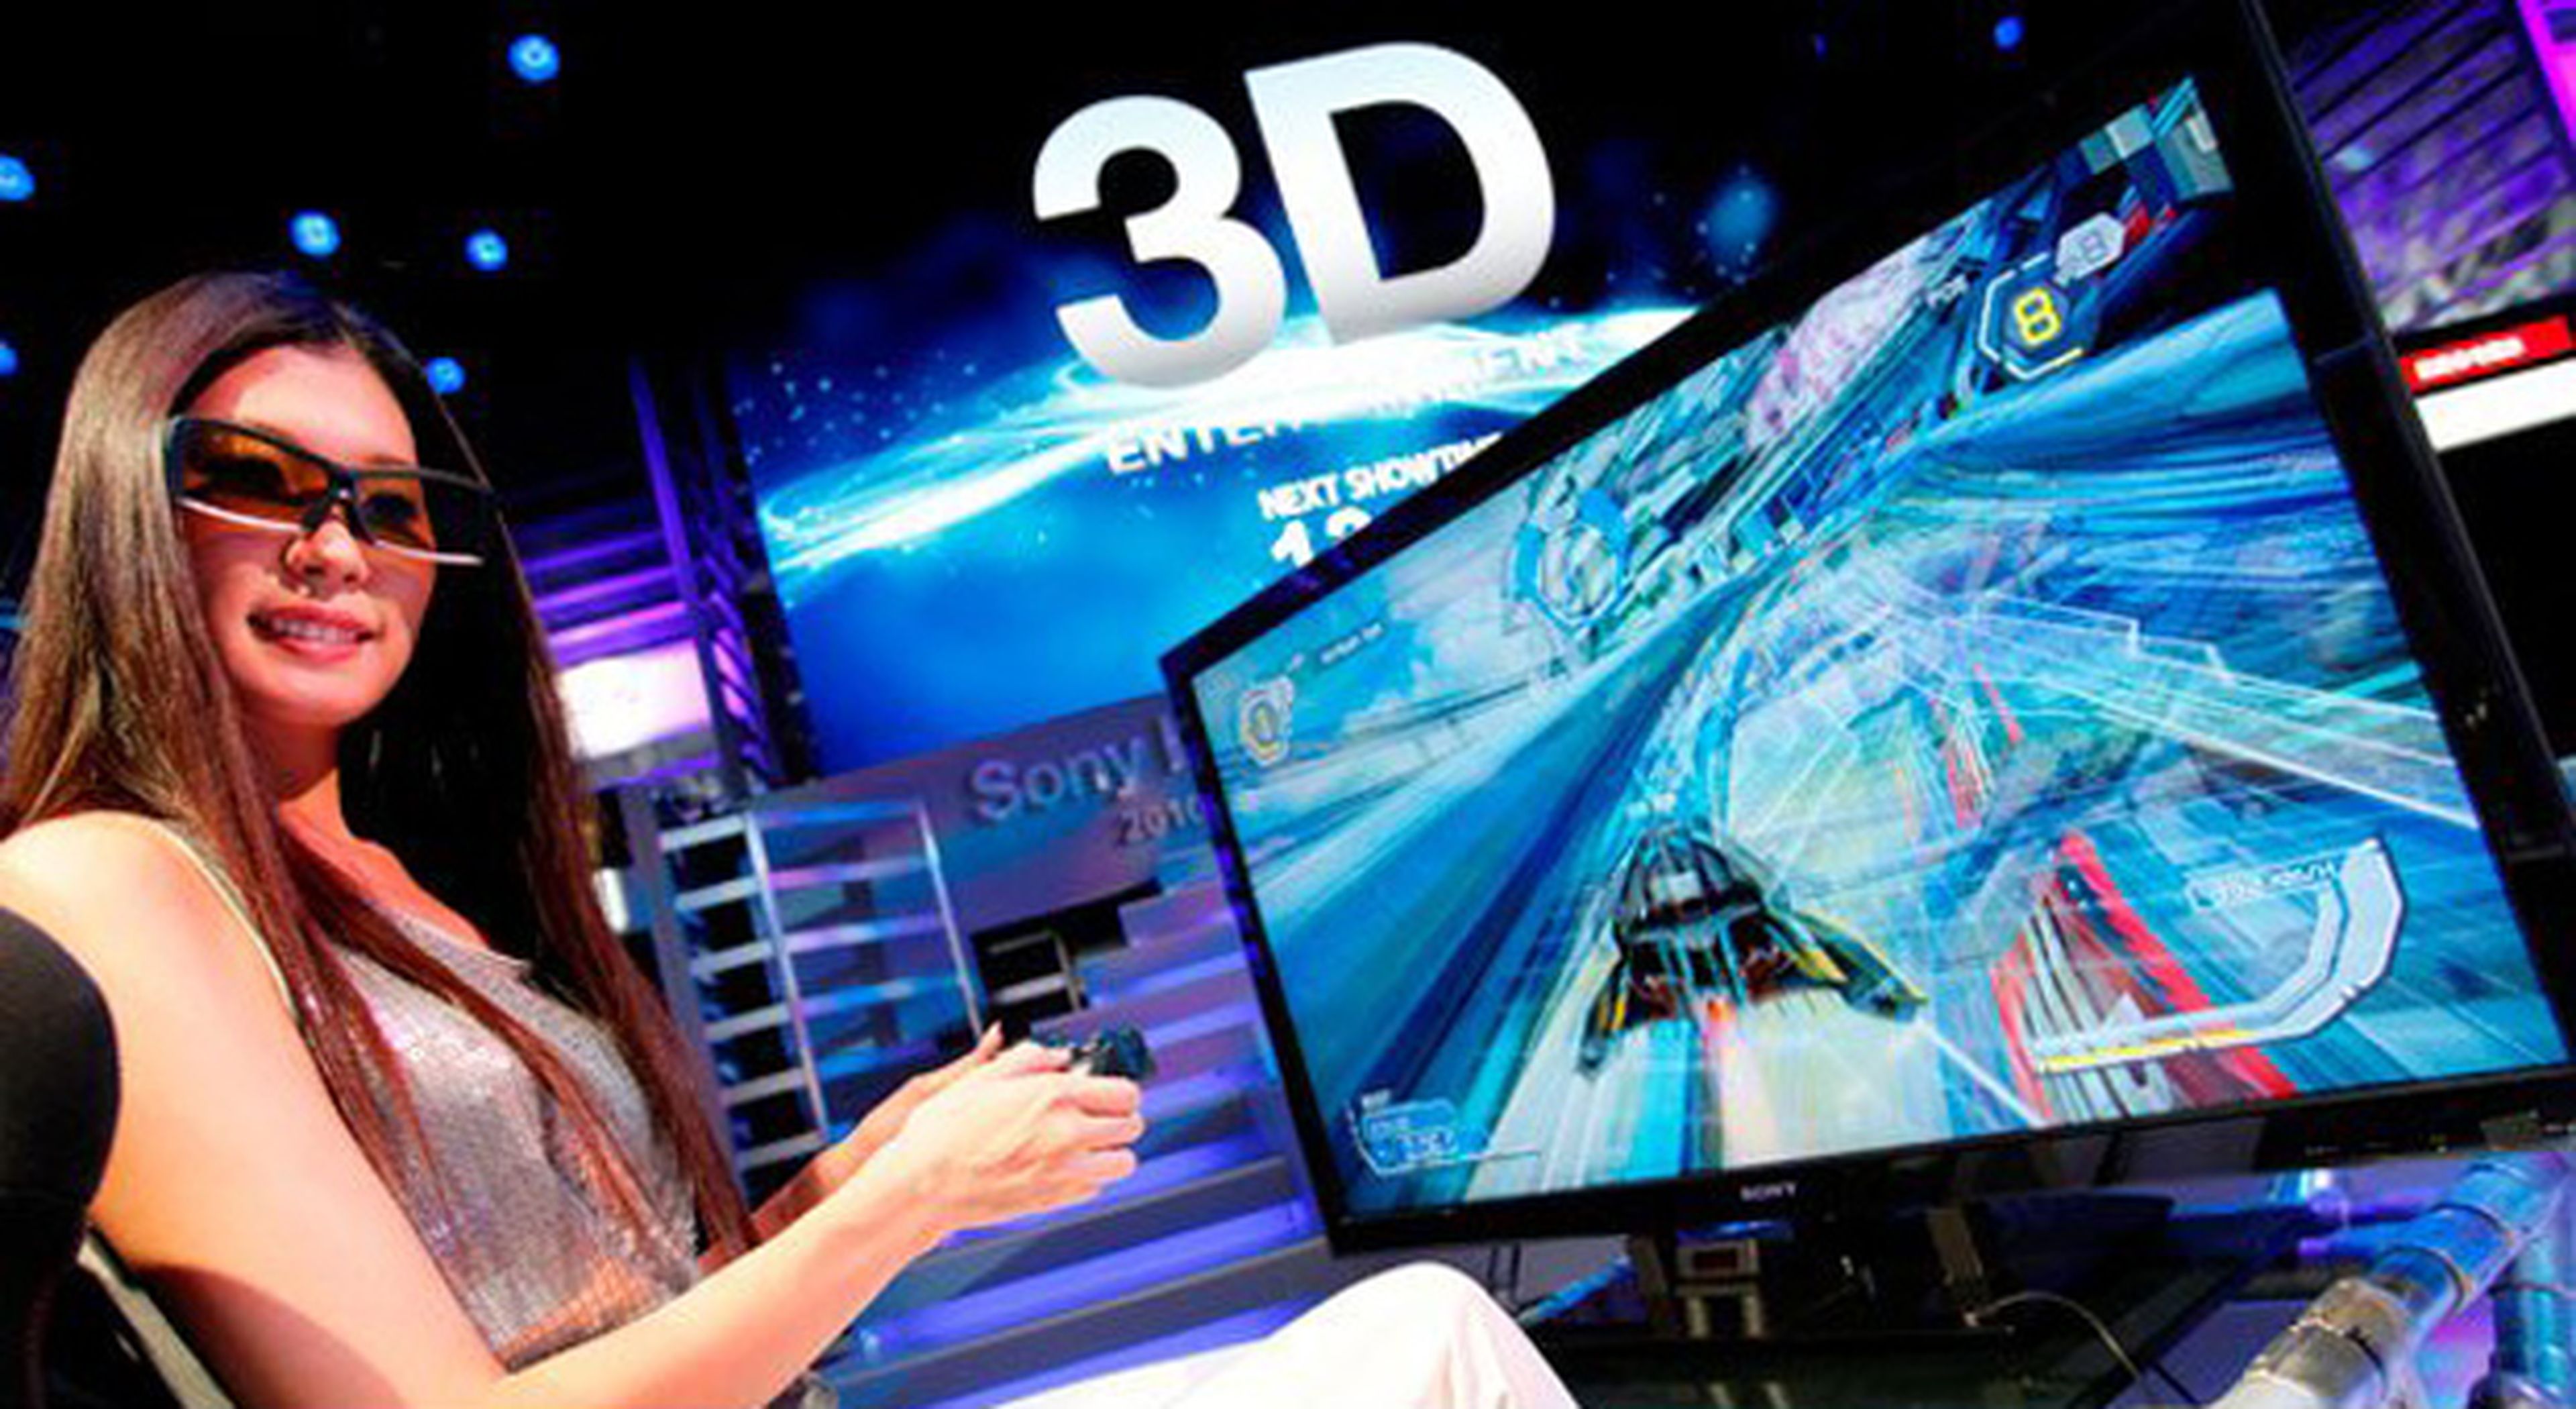 ¿El E3 de la realidad virtual?